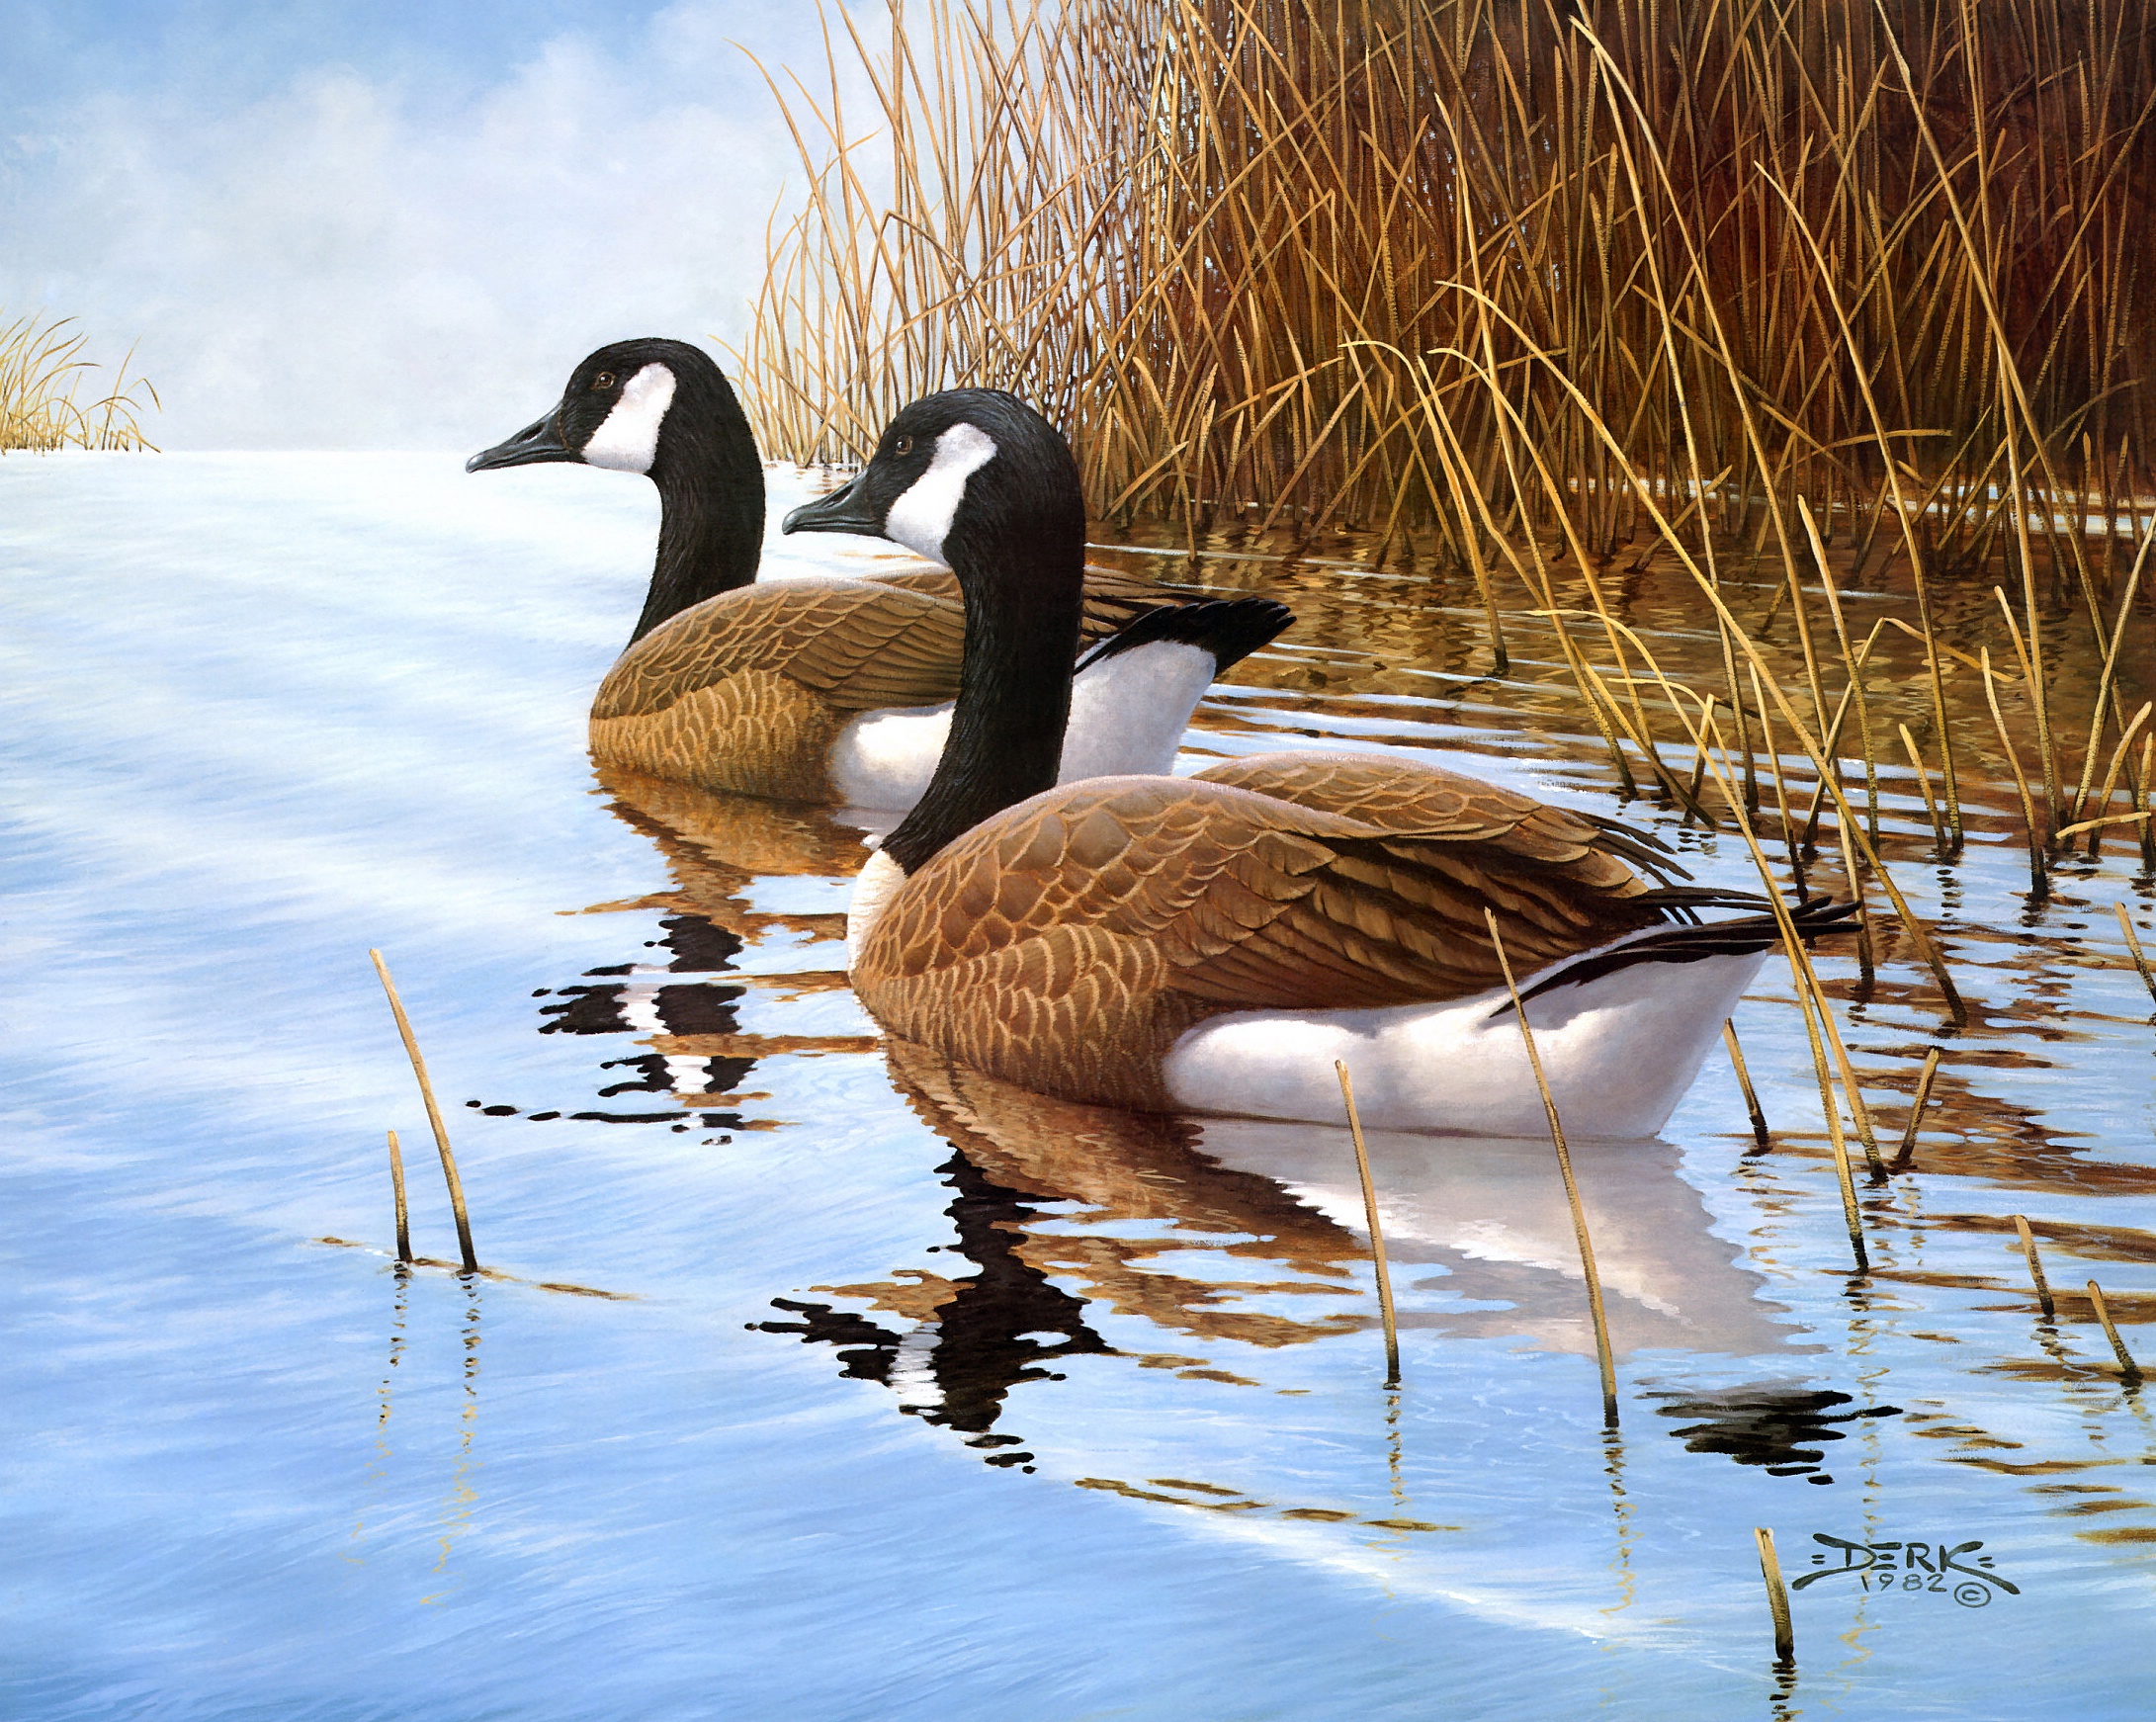 Двое уток. Хансен Дерк (Derk Hansen) художник. Селезни пейзаж. Картина утки. Живопись птицы на водоеме.